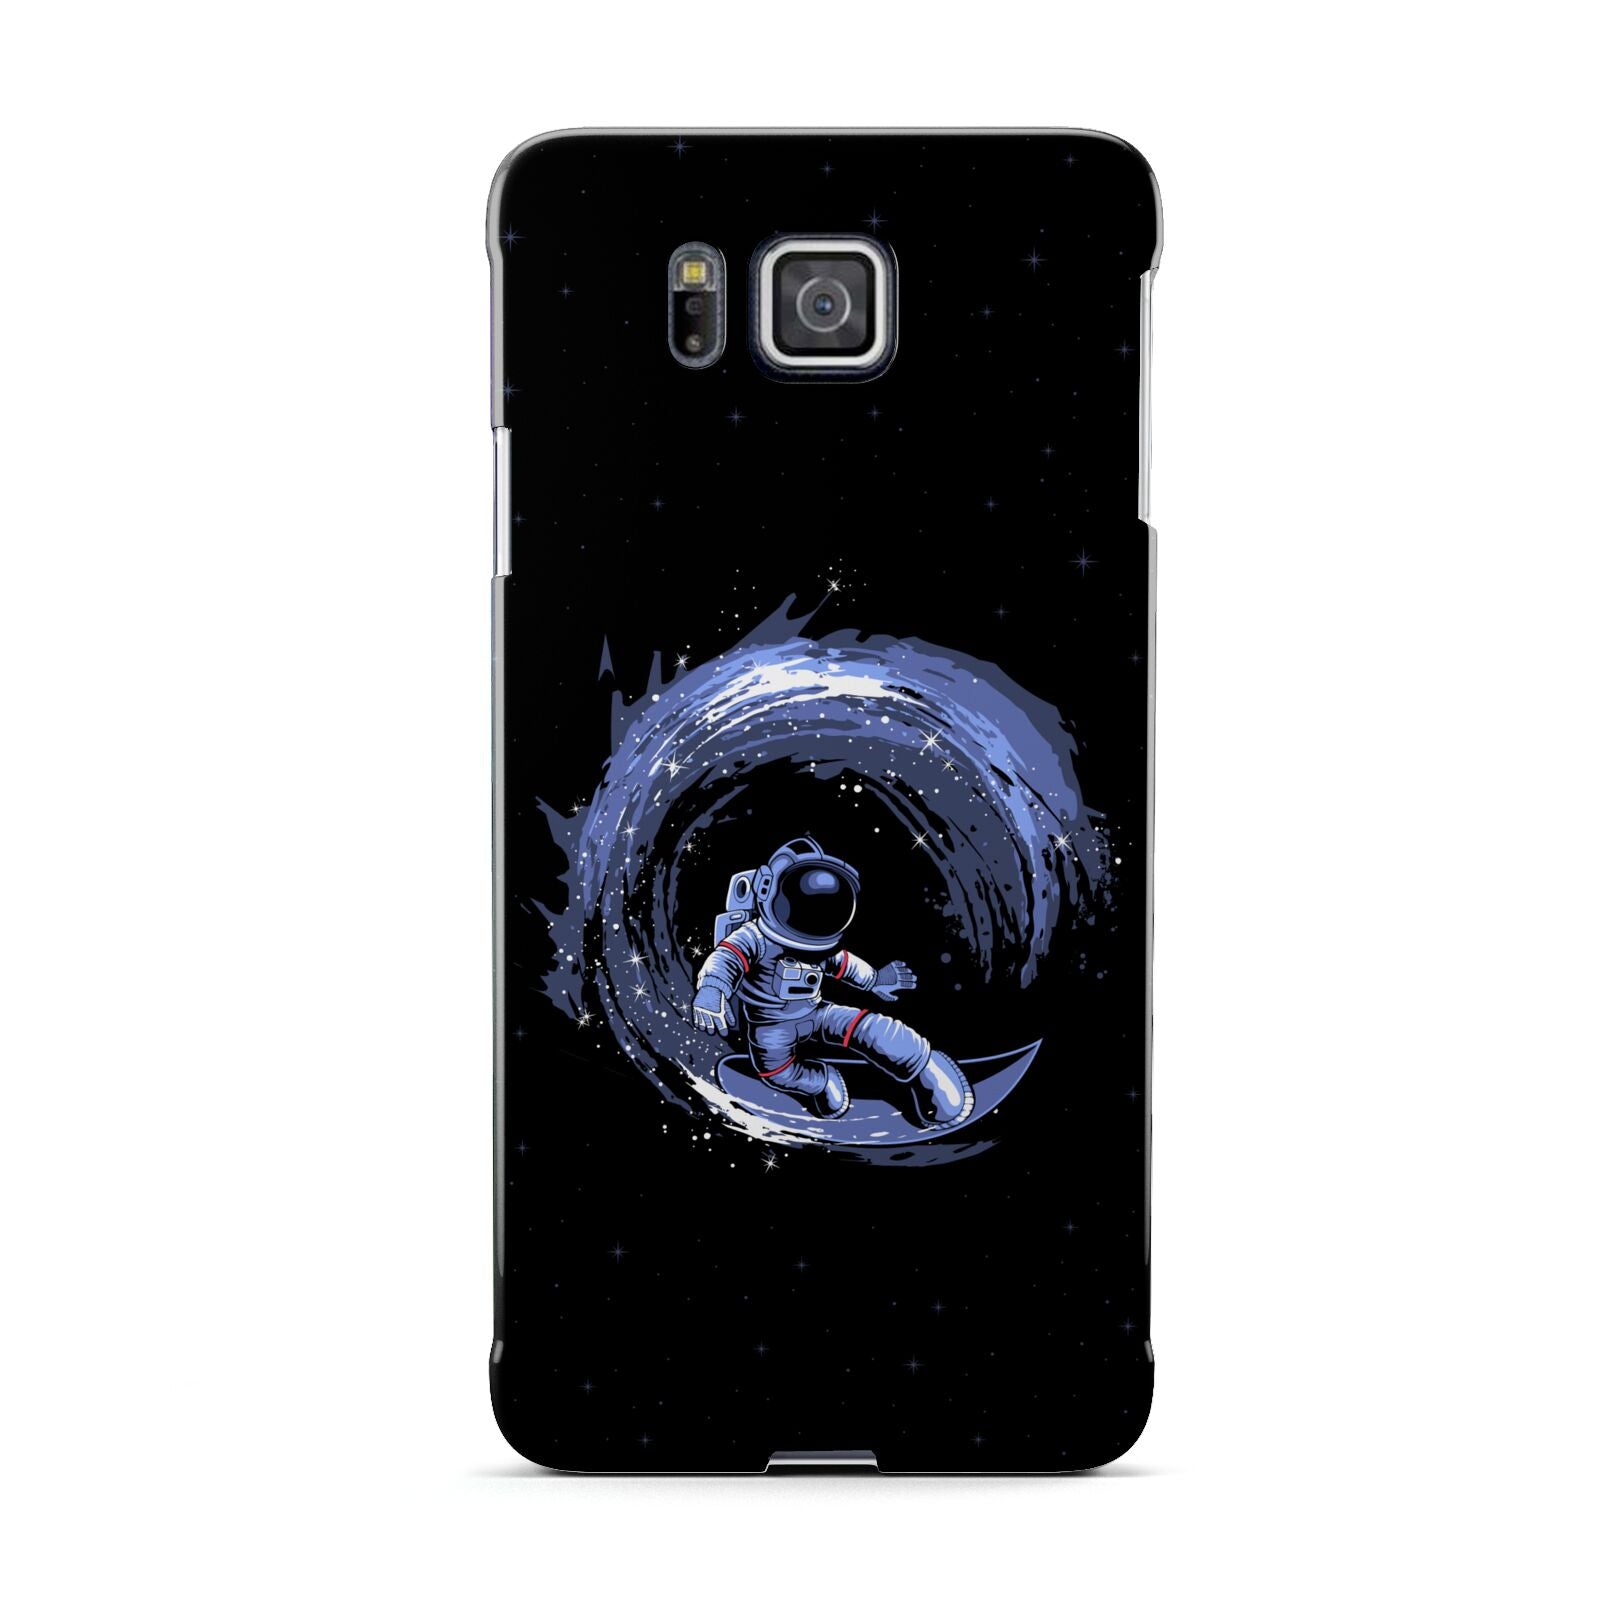 Surfing Astronaut Samsung Galaxy Alpha Case